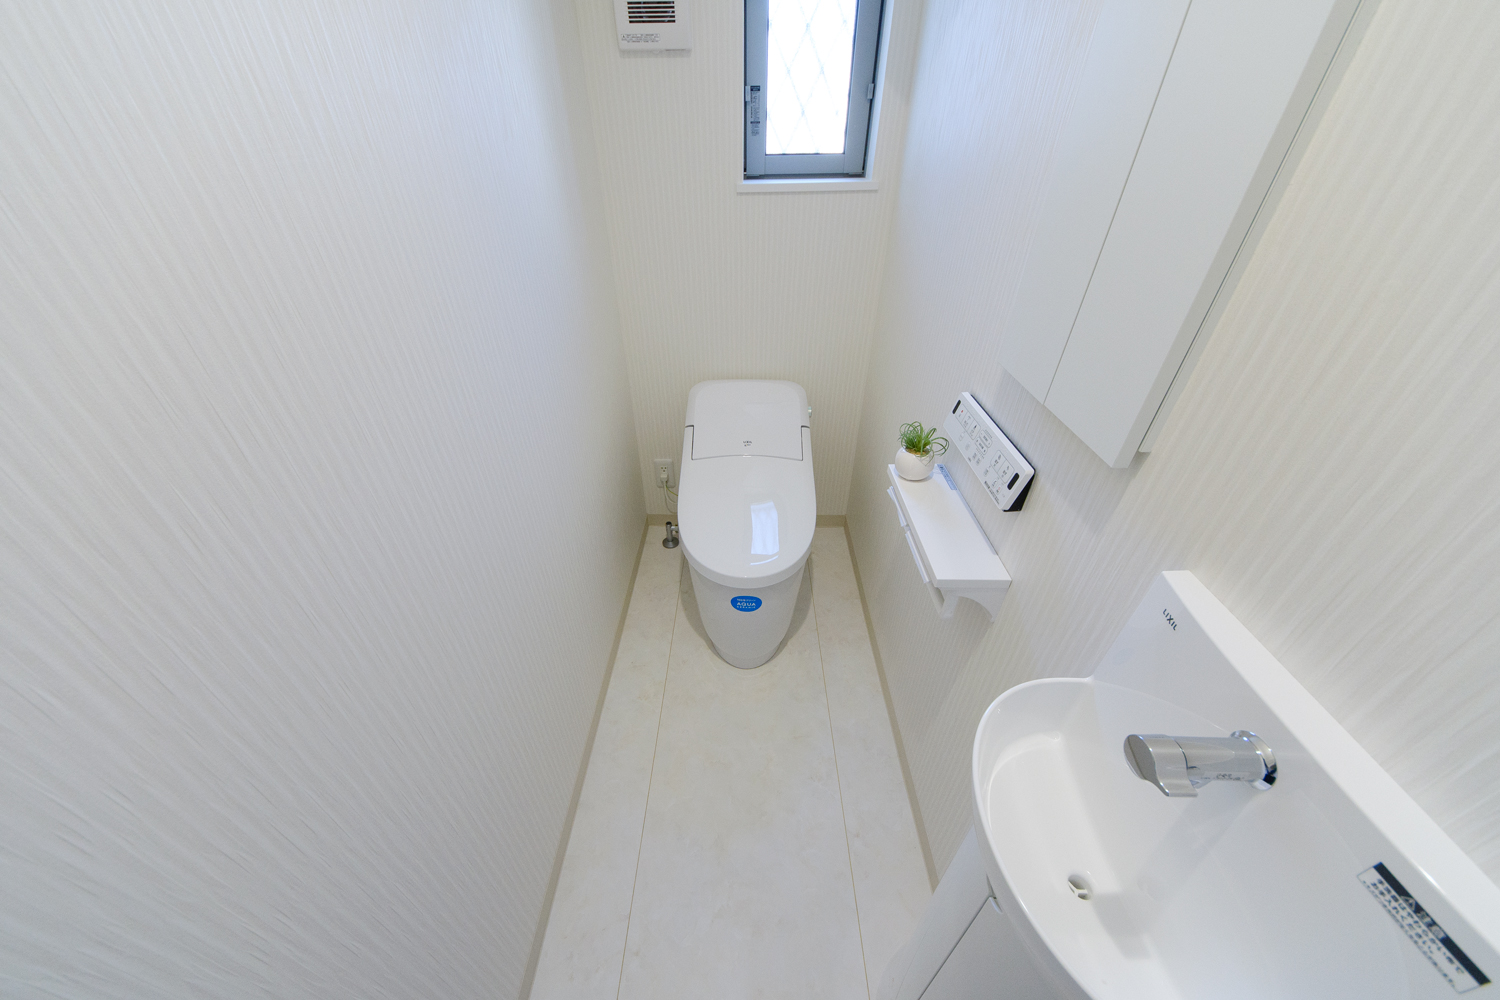 タンクレストイレで広々快適な1階トイレ。独立タイプの手洗付きでお客様をおもてなしできます。